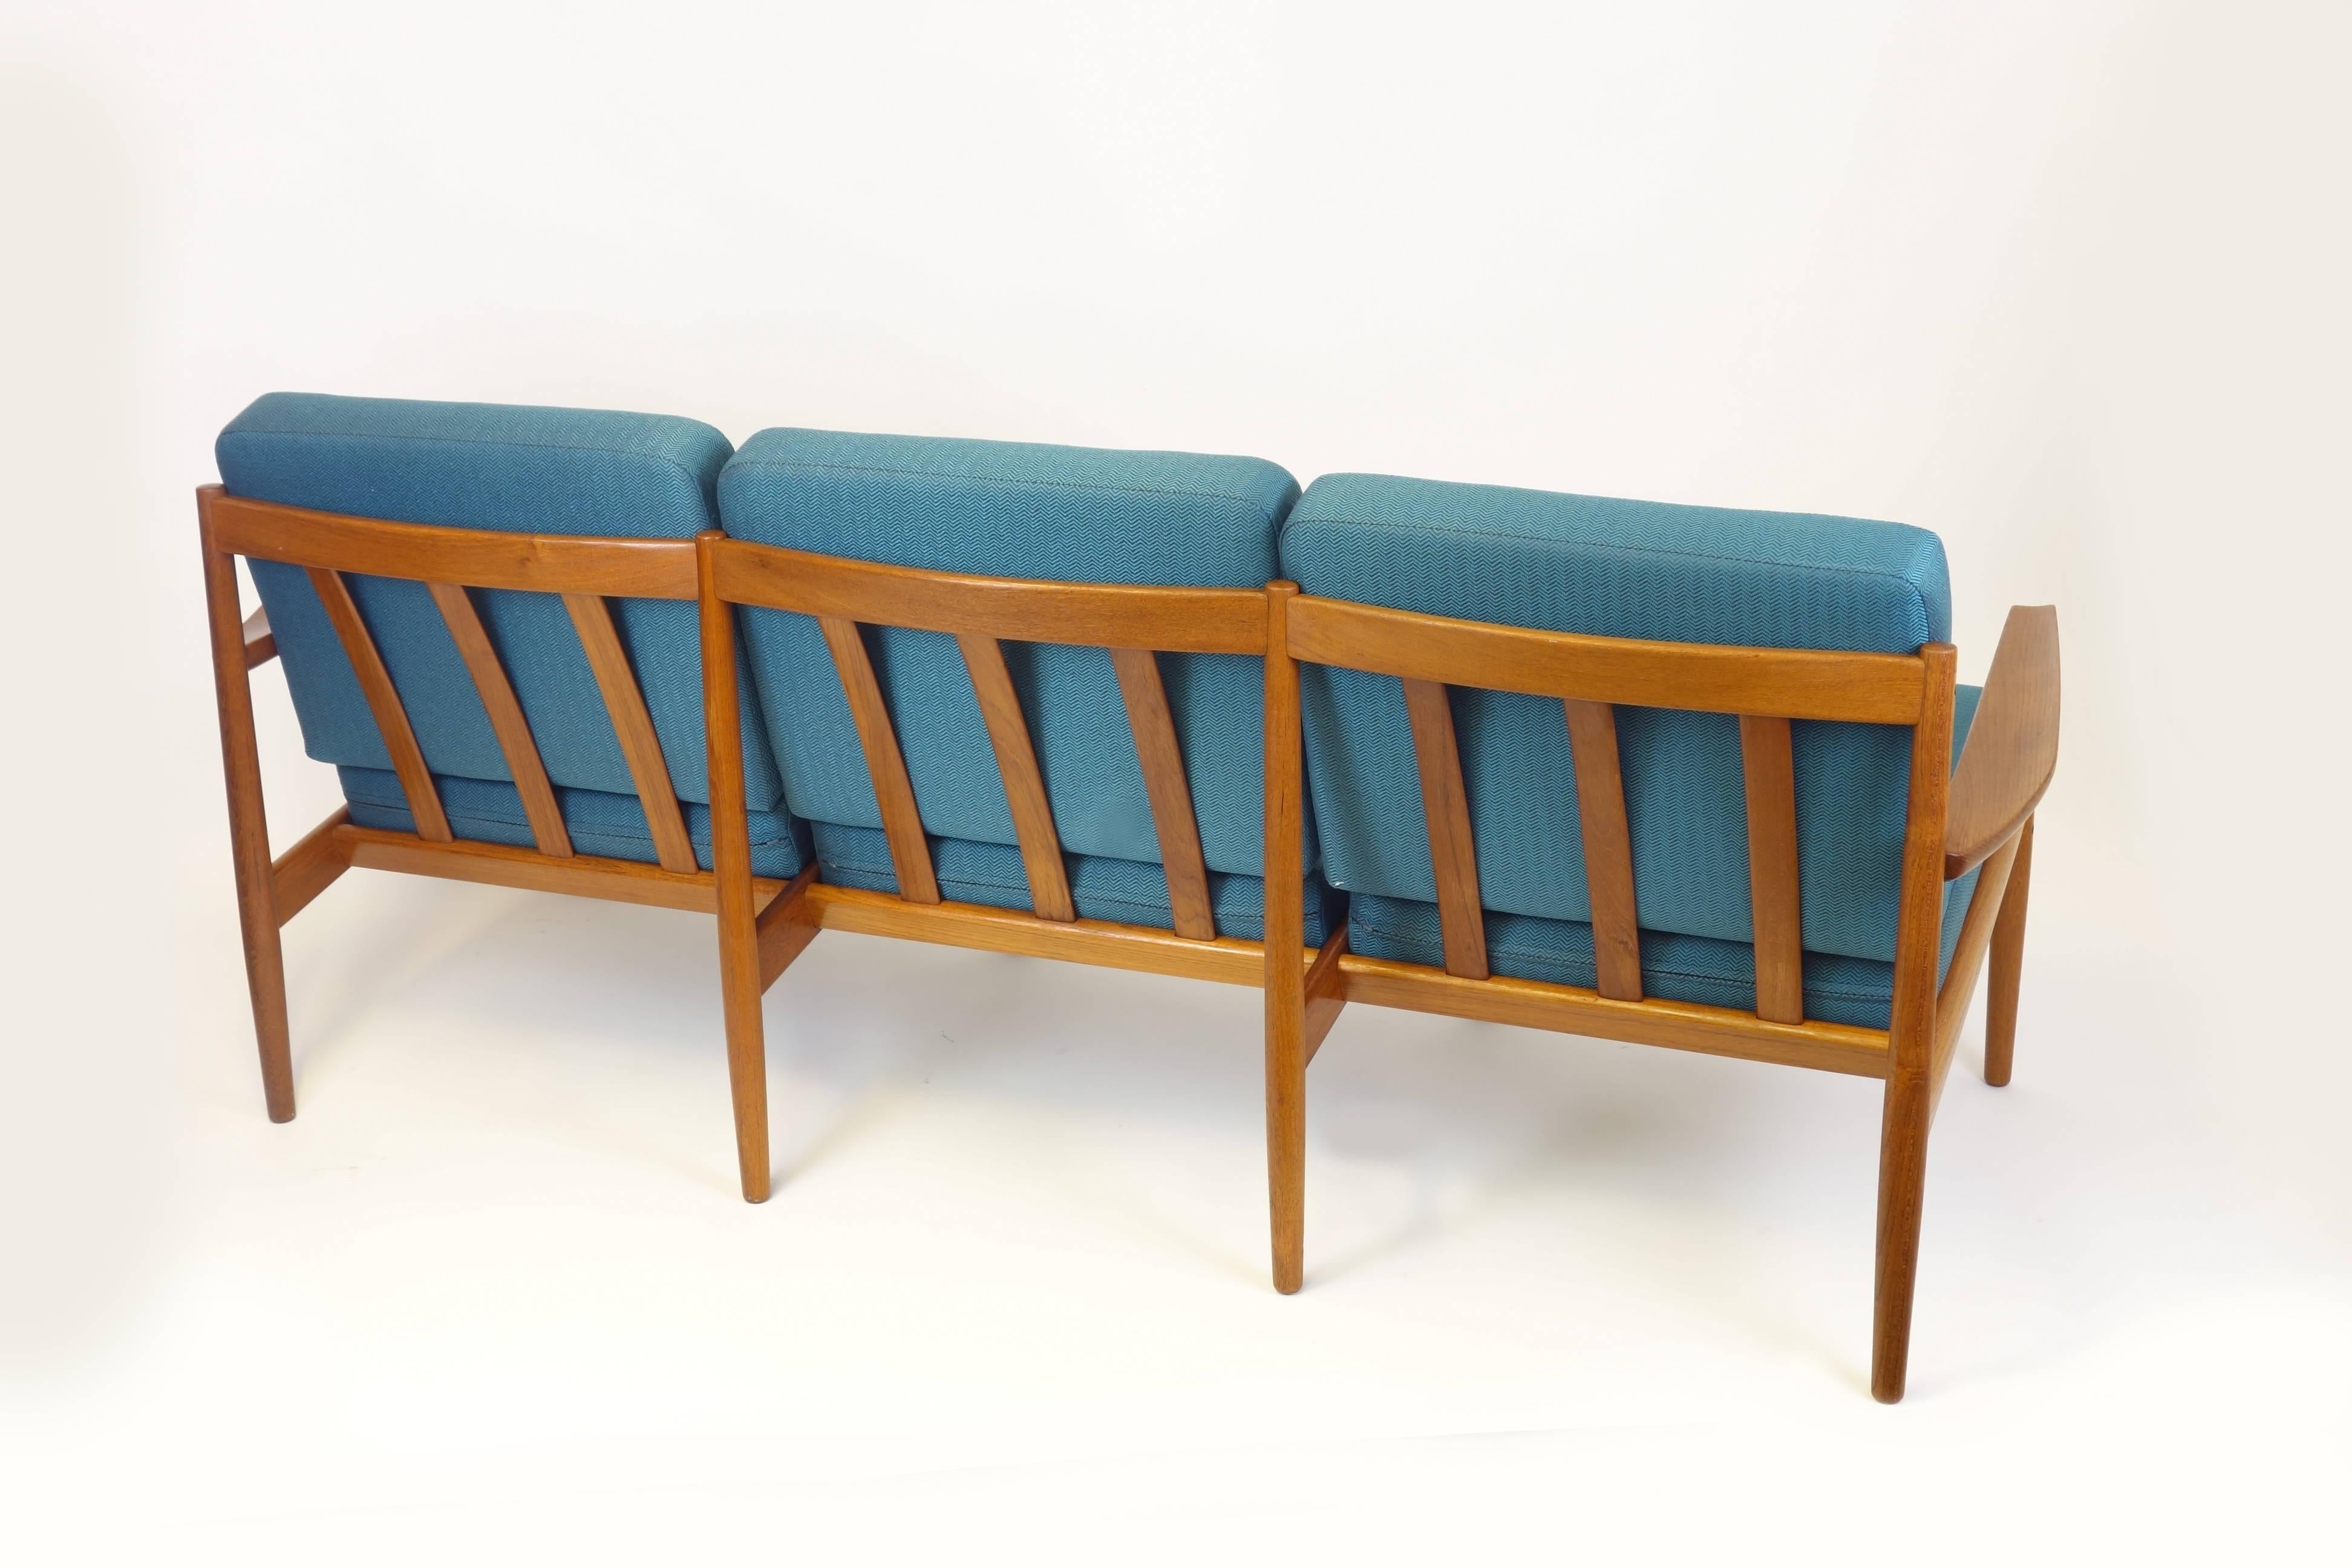 Außergewöhnlich seltene 3-Sitzer Couch oder Sofa von Grete Jalk für Dansk Mobler, Dänemark 1960er Jahre. Massiver Teakholzrahmen mit rechteckiger Messingintarsie als Zeichen der Jalk-Herkunft. Ausgestattet mit einer völlig neuen Polsterung und einem